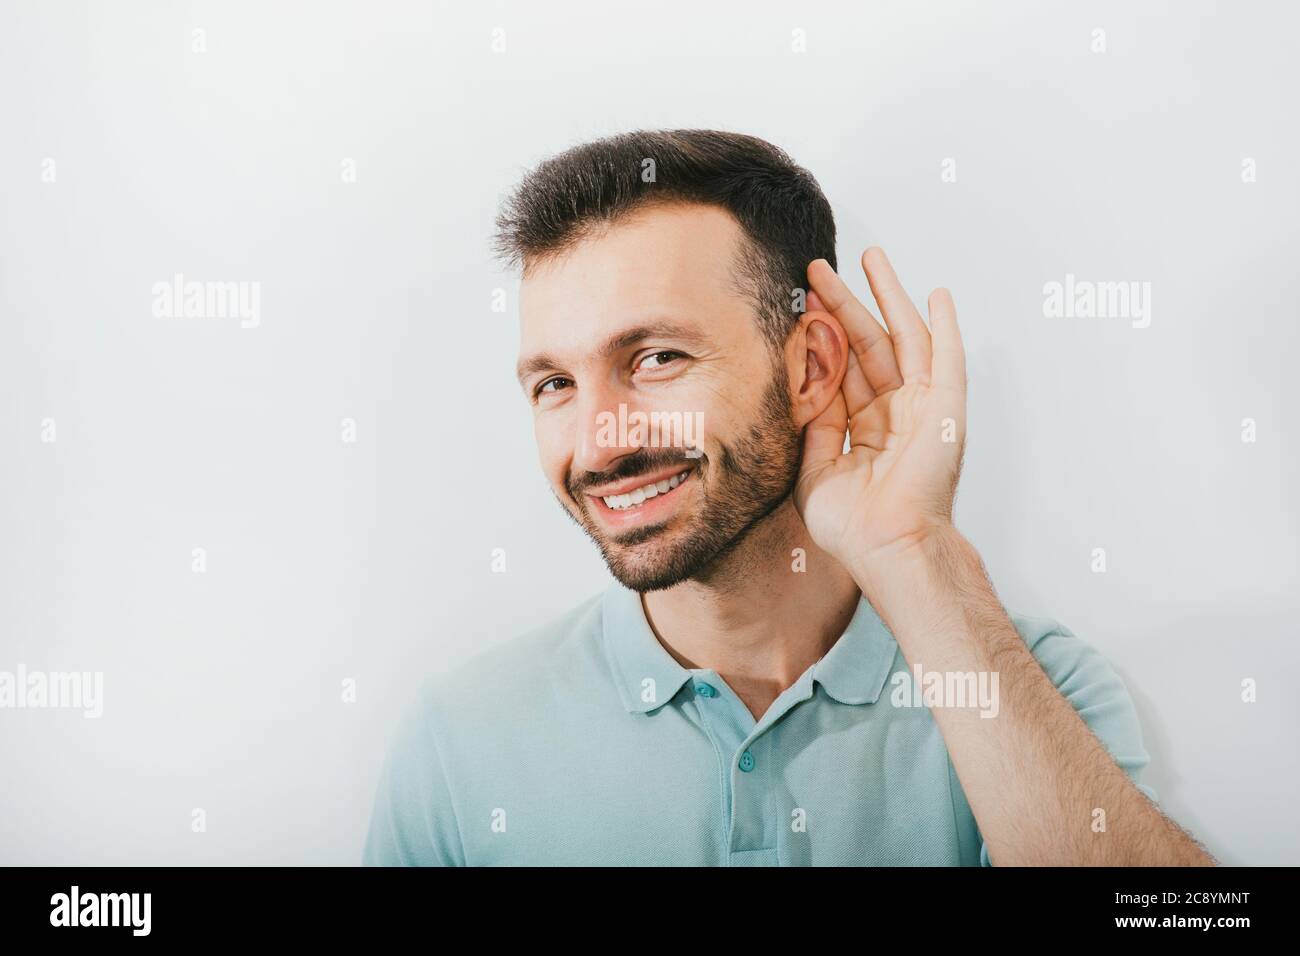 Vérifiez votre audition. L'homme positif tient sa main près de son oreille, sur un fond gris. Santé de l'oreille, traitement et diagnostic de l'audition Banque D'Images